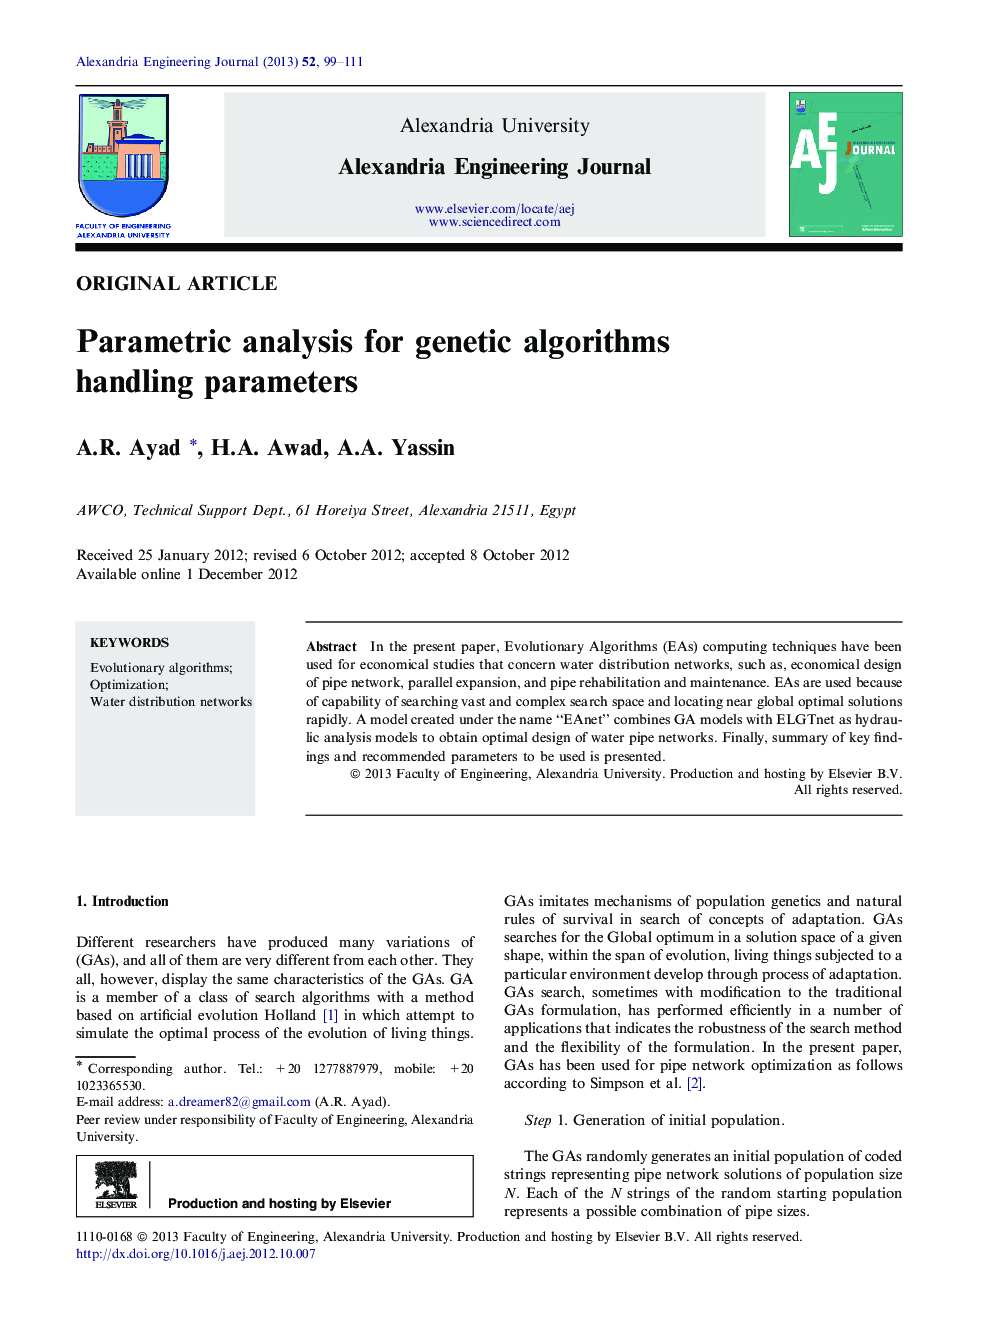 Parametric analysis for genetic algorithms handling parameters 